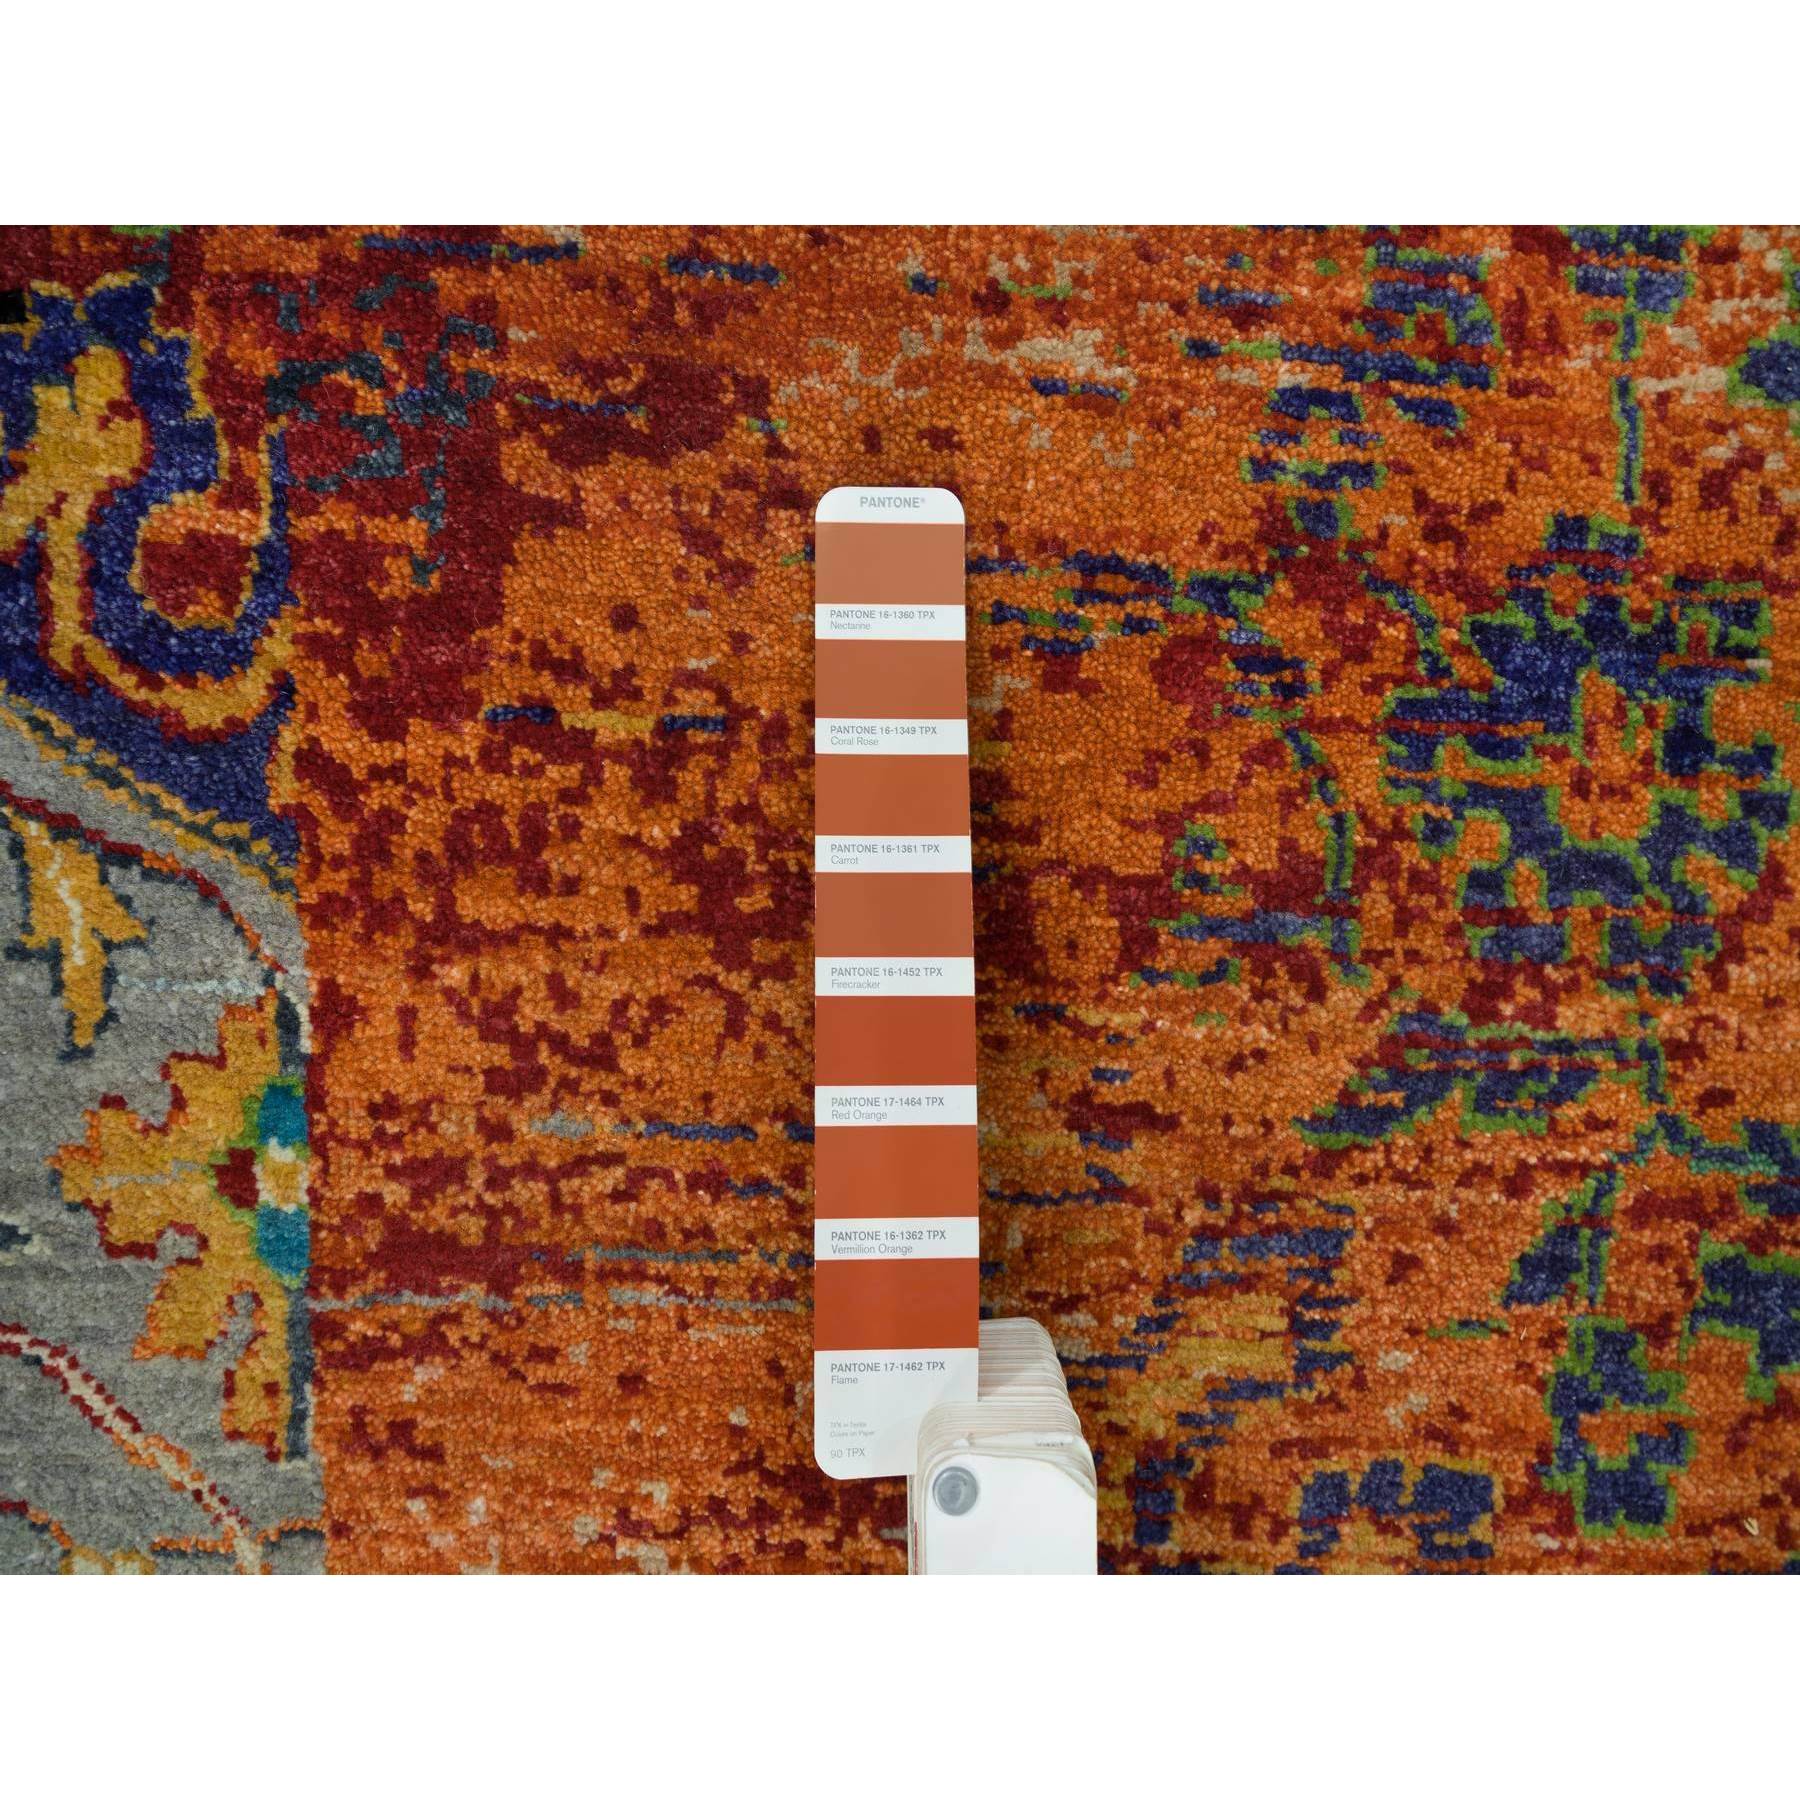 12'1"x12'1" Metallic Orange, Ancient Ottoman Erased Design, Ghazni Wool, Hand Woven, Round Oriental Rug 